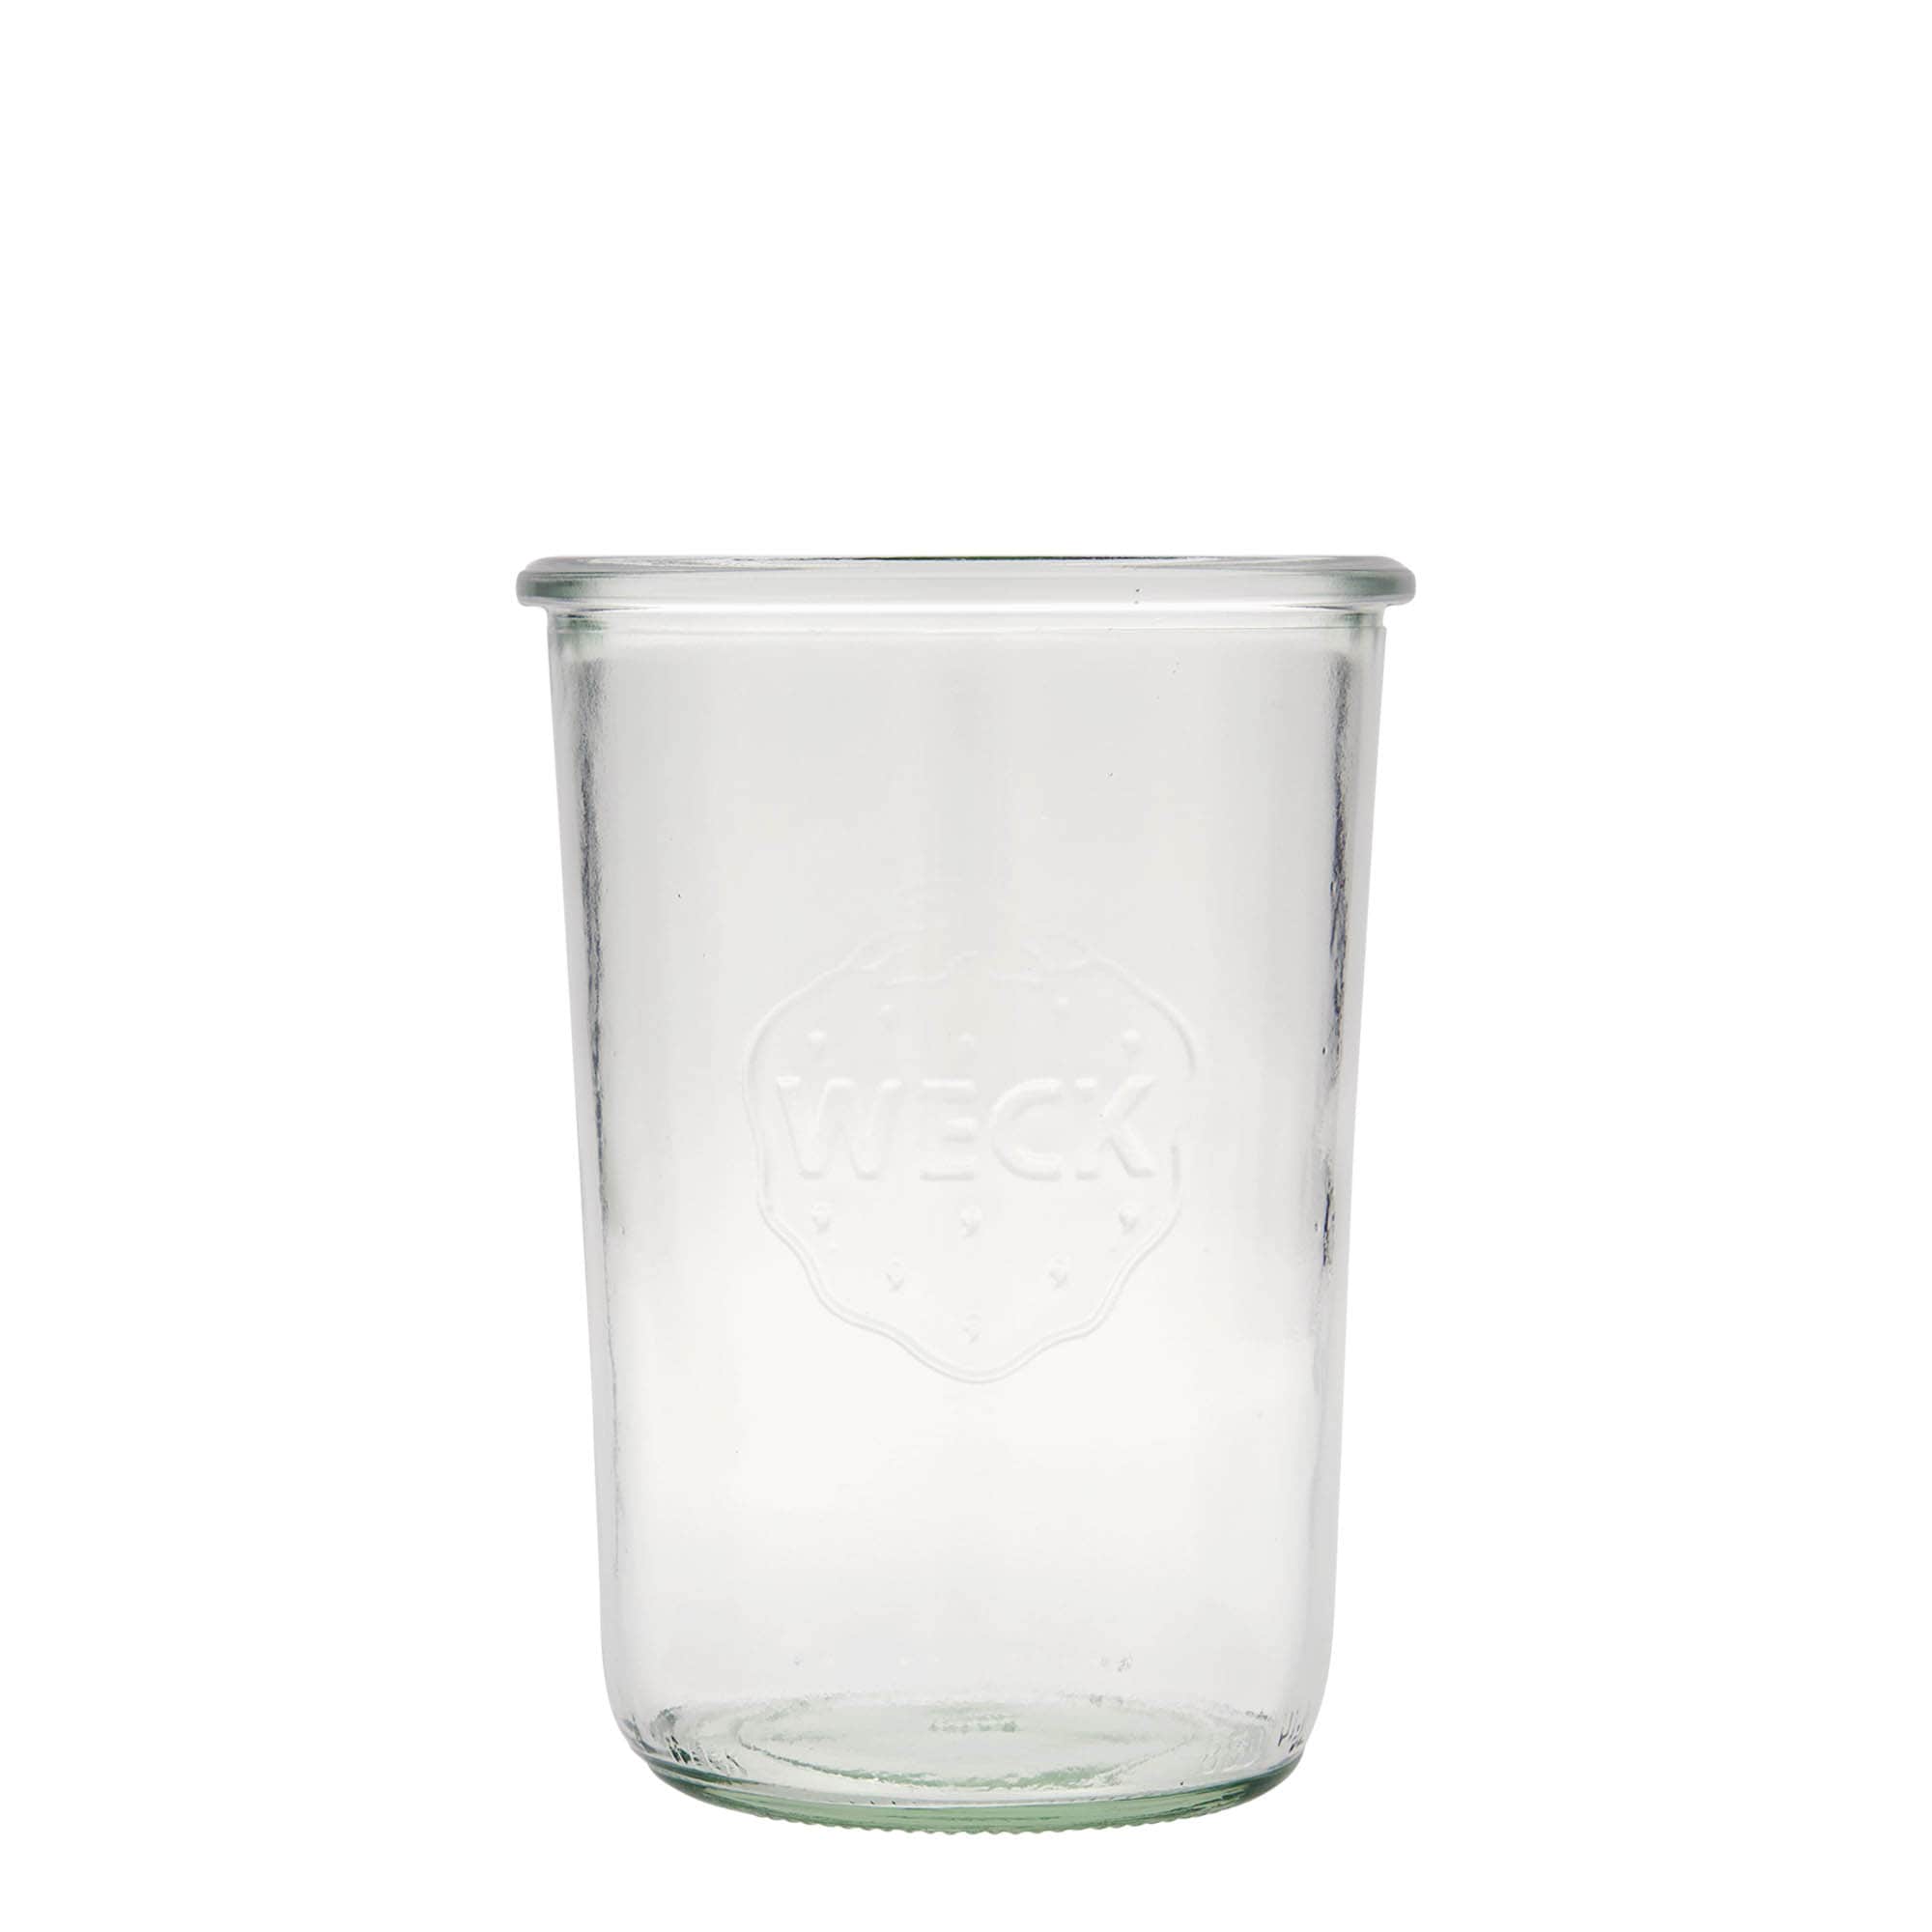 850 ml-es WECK befőttesüveg, szájnyílás: Kerek perem